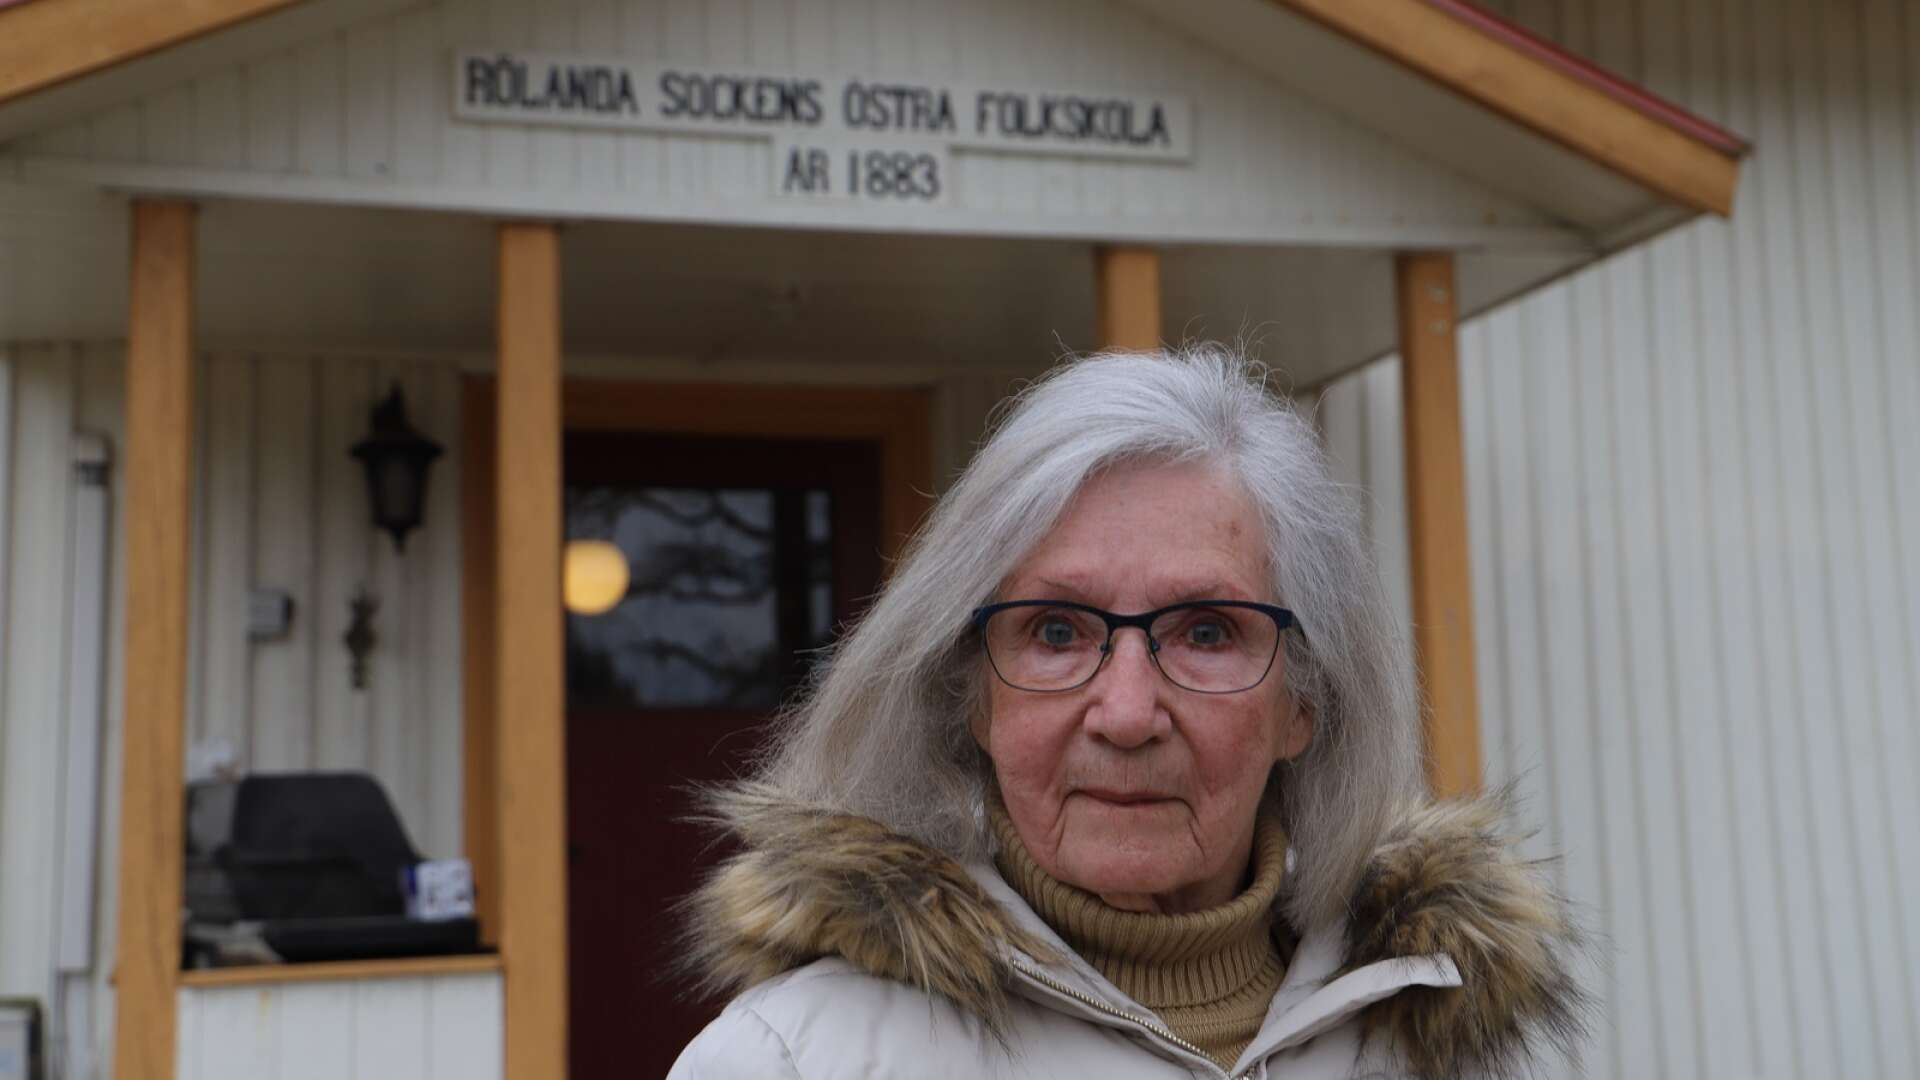 Barbro Torstensson gick i Rölanda sockens östra folkskola.